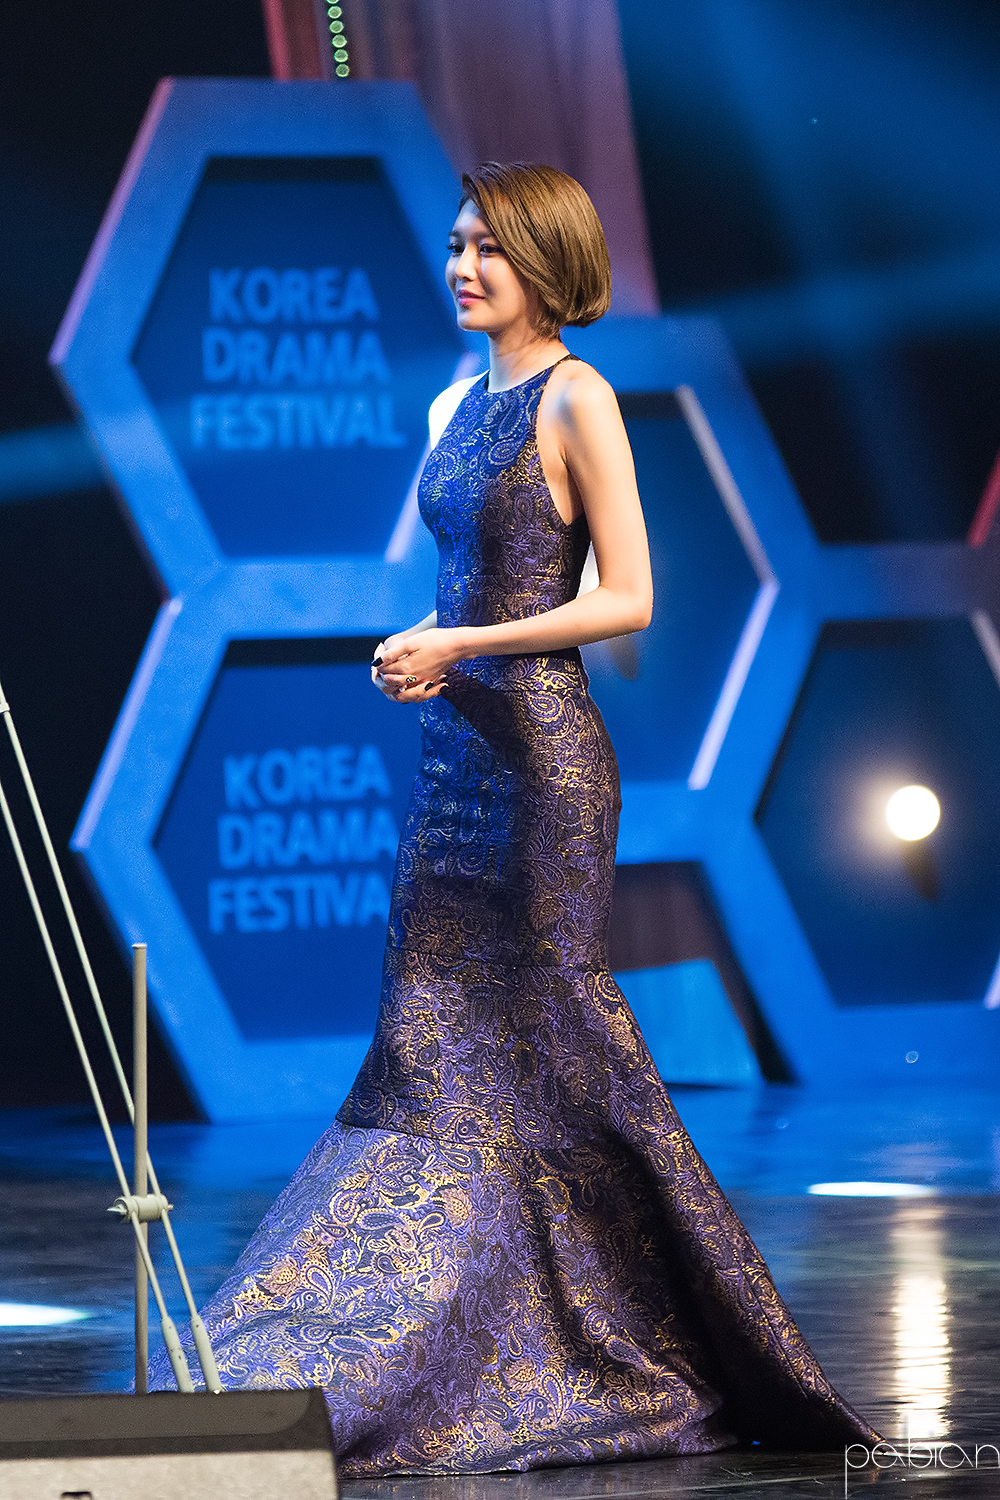 [PIC][09-10-2015]SooYoung đảm nhận vai trò MC cho "2015 Korea Drama Awards" + Nhận giải "Female Excellence Award" vào hôm nay 246D0A50561B89F12BBDD3